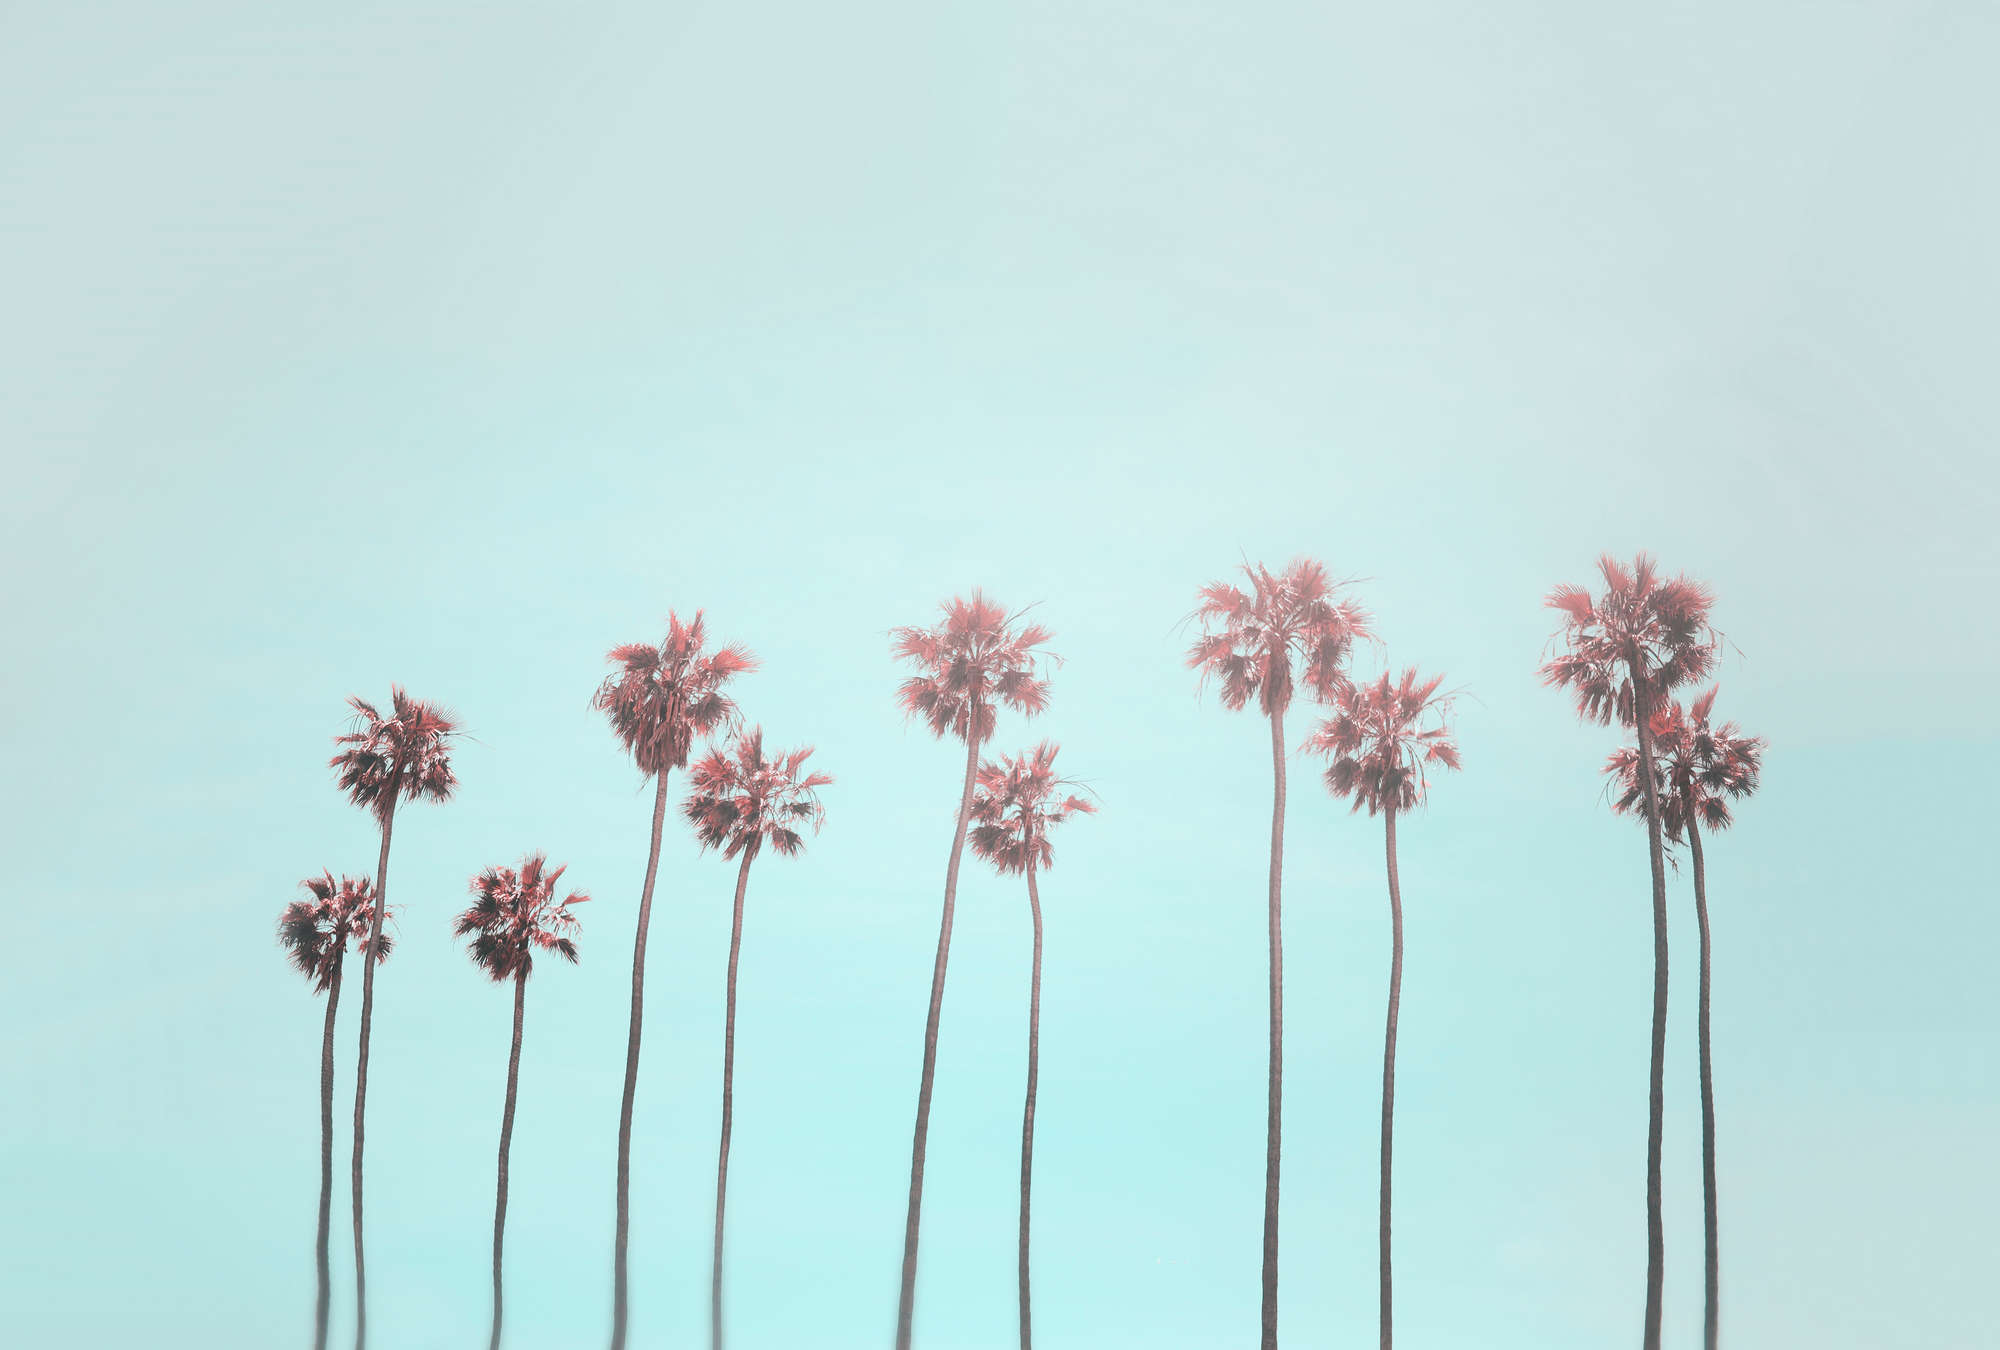             Mural de palmeras y cielo para una sensación de playa en turquesa y rosa
        